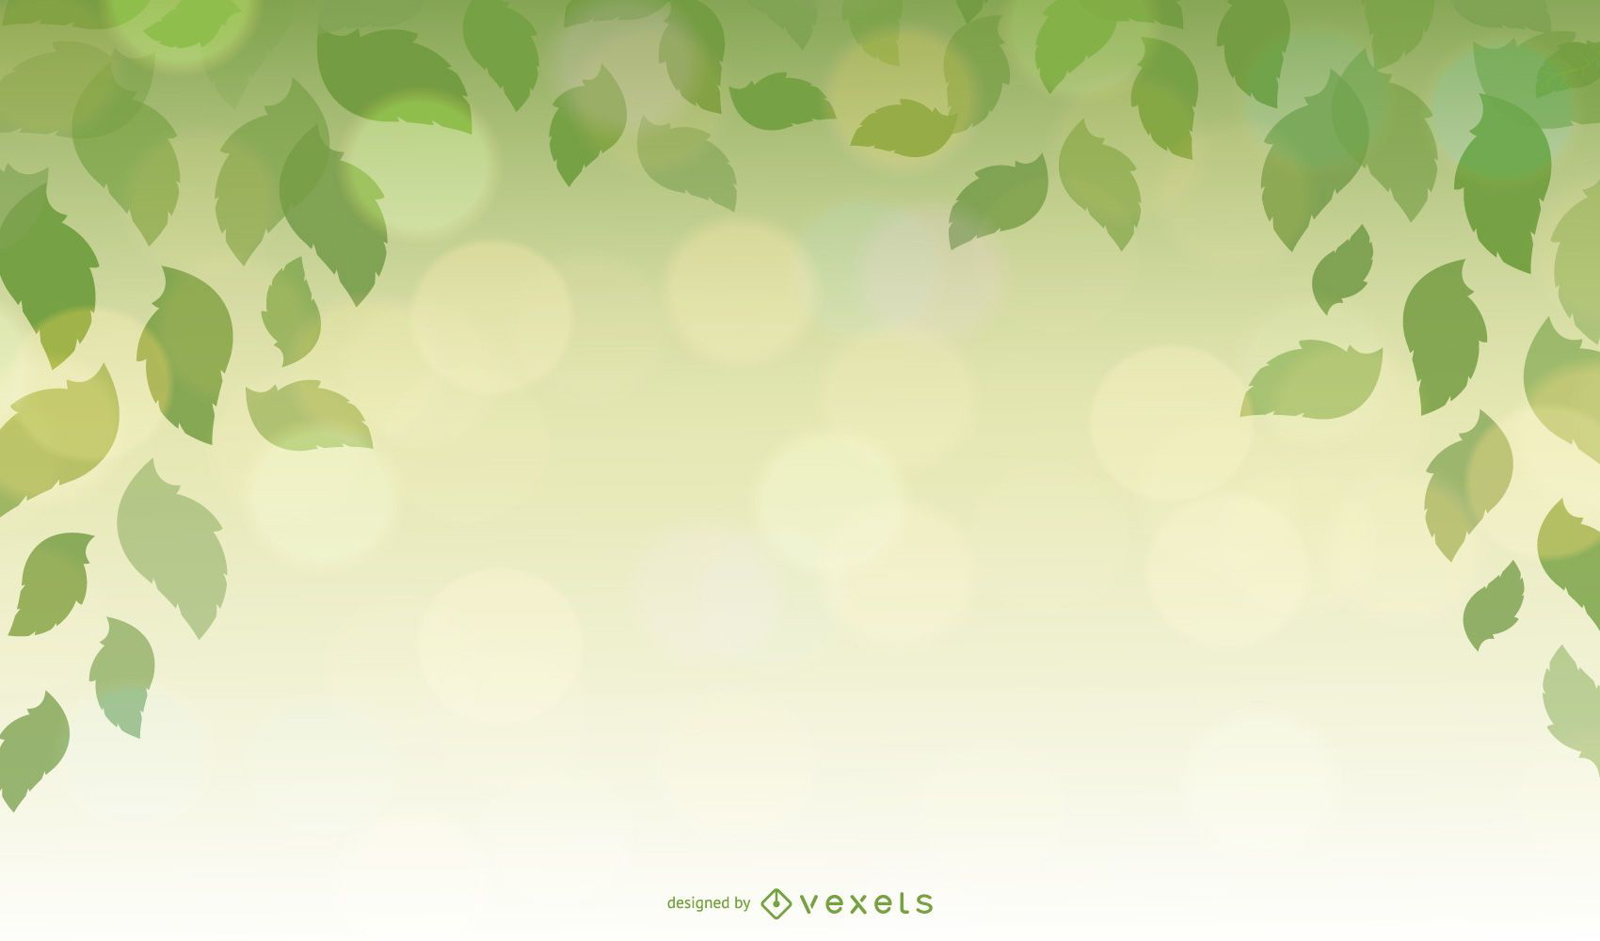 Gestaltungselement mit grünen Blättern